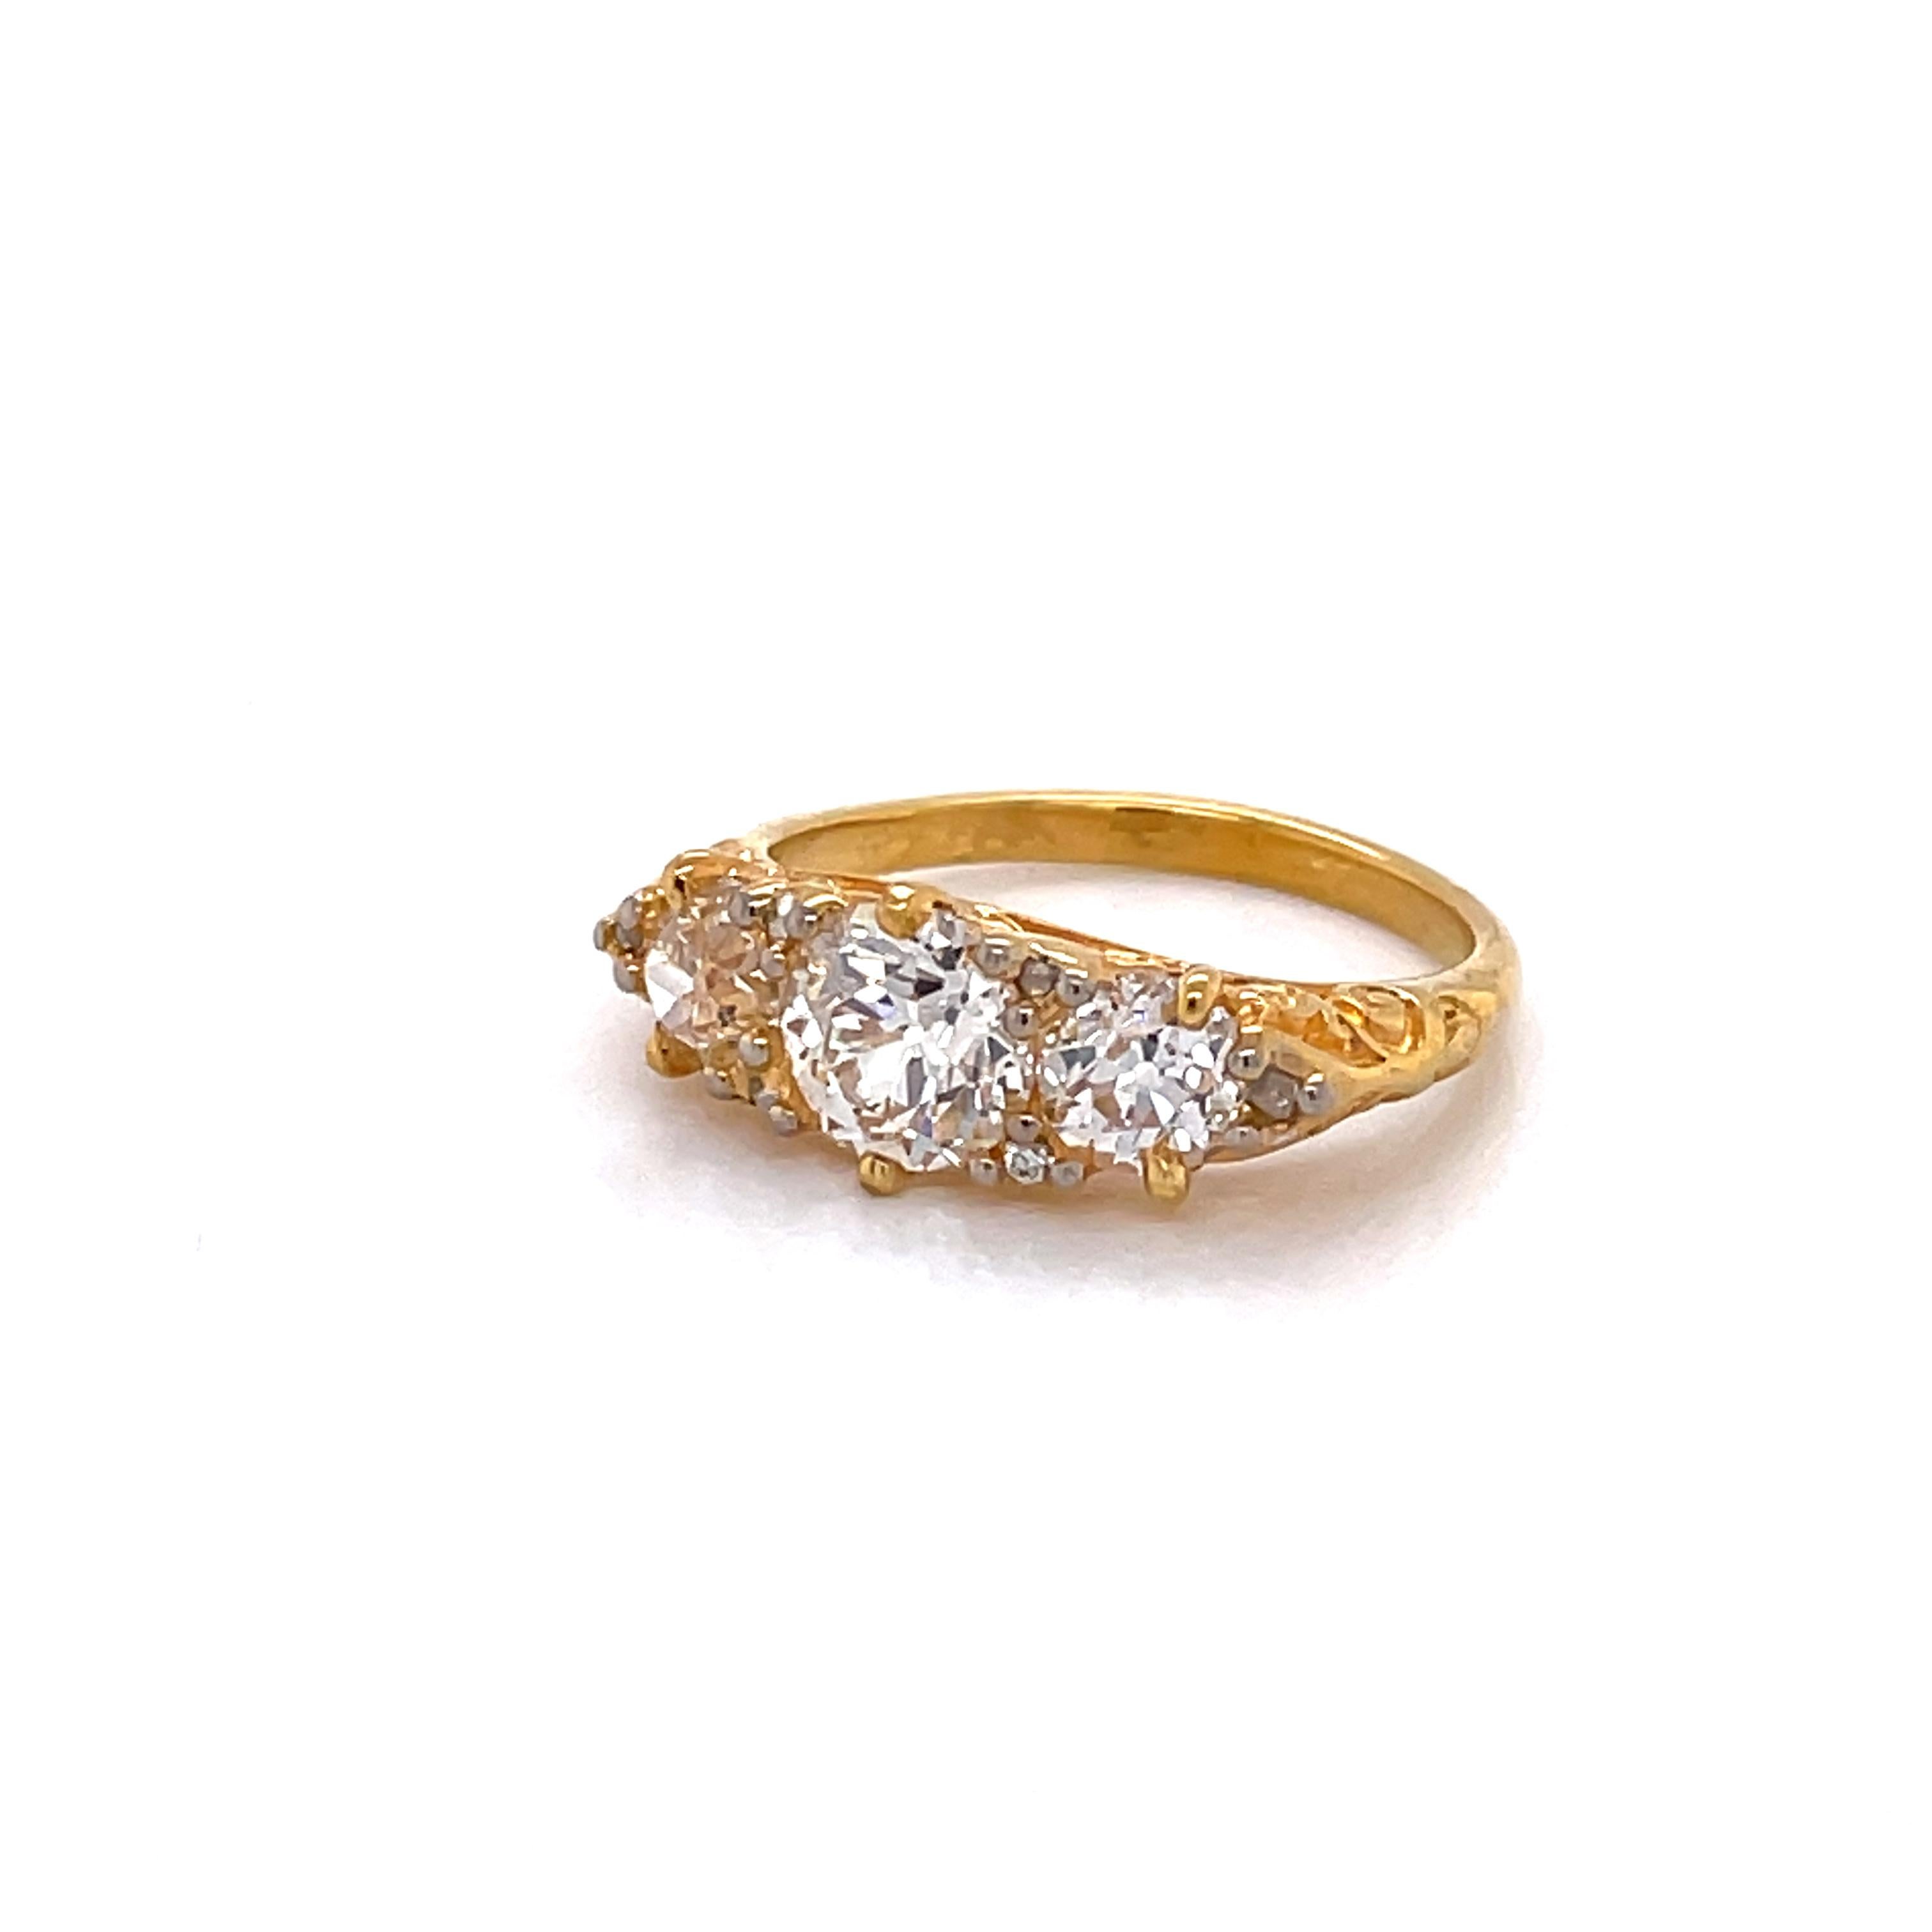 Antique English Diamond 18 Karat Yellow Gold Ring 1